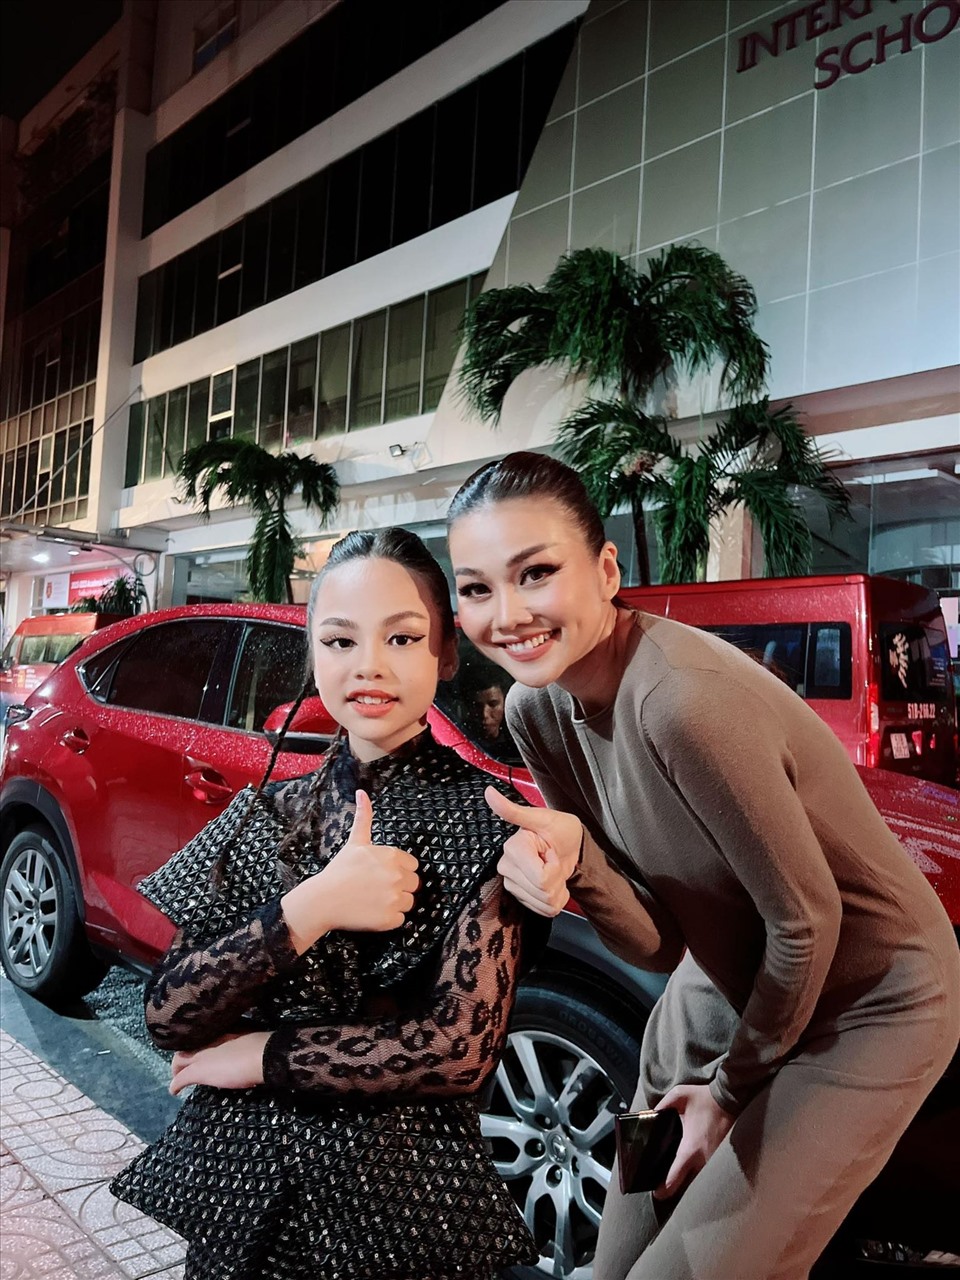 Tham gia trình diễn cùng siêu mẫu Thanh Hằng, Hiểu Anh cũng được nữ siêu mẫu hướng dẫn những bước catwalk trên sàn diễn.